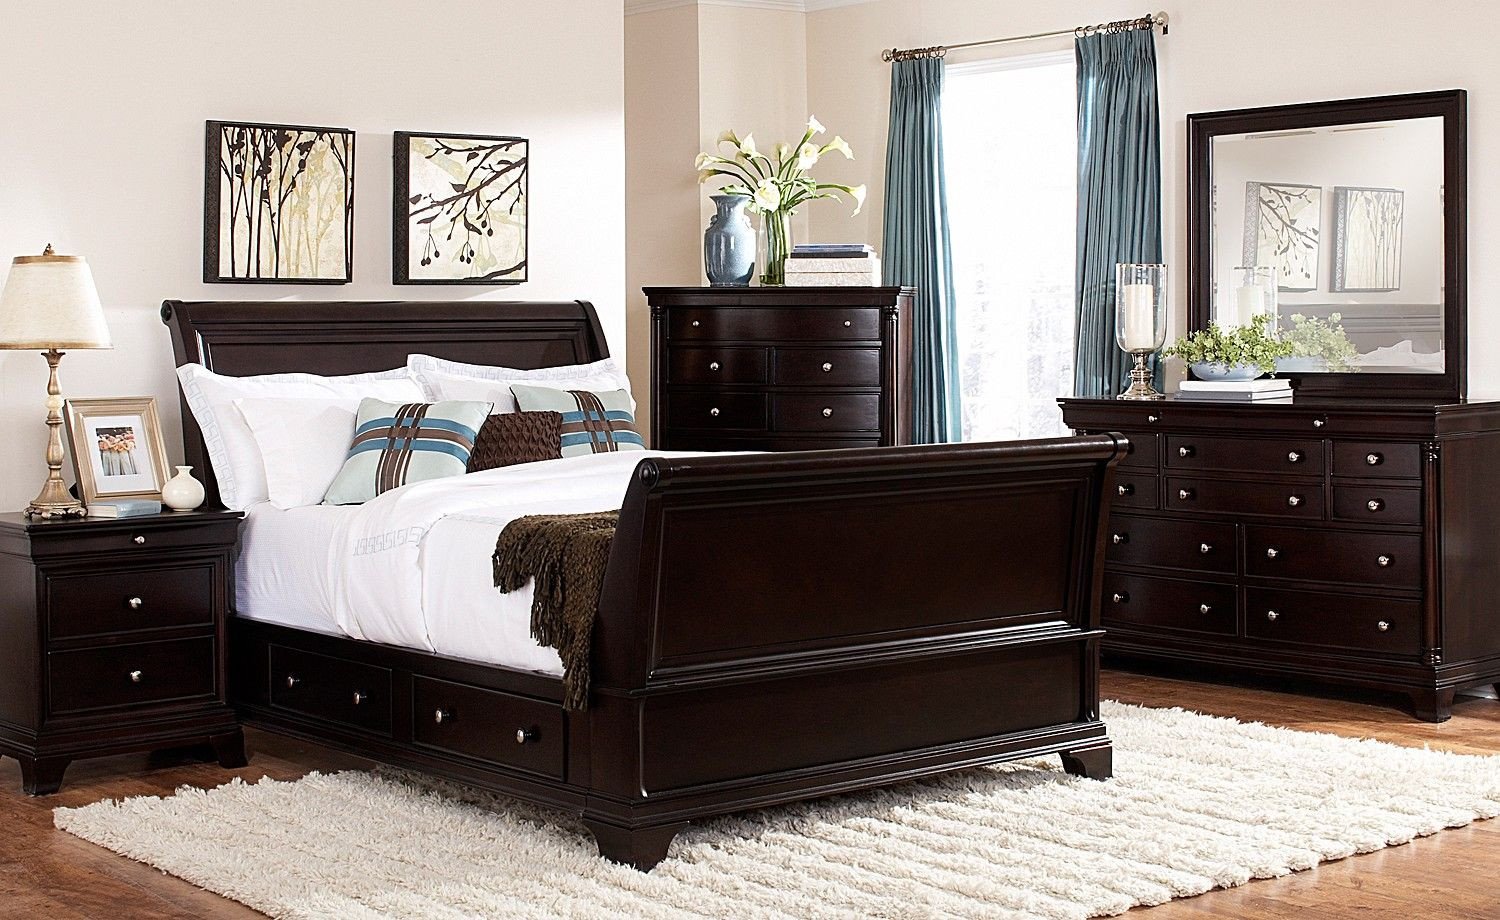 Bedroom Set with Storage Luxury Lakeshore Bedroom 7 Pc Queen Storage Bedroom Furniture